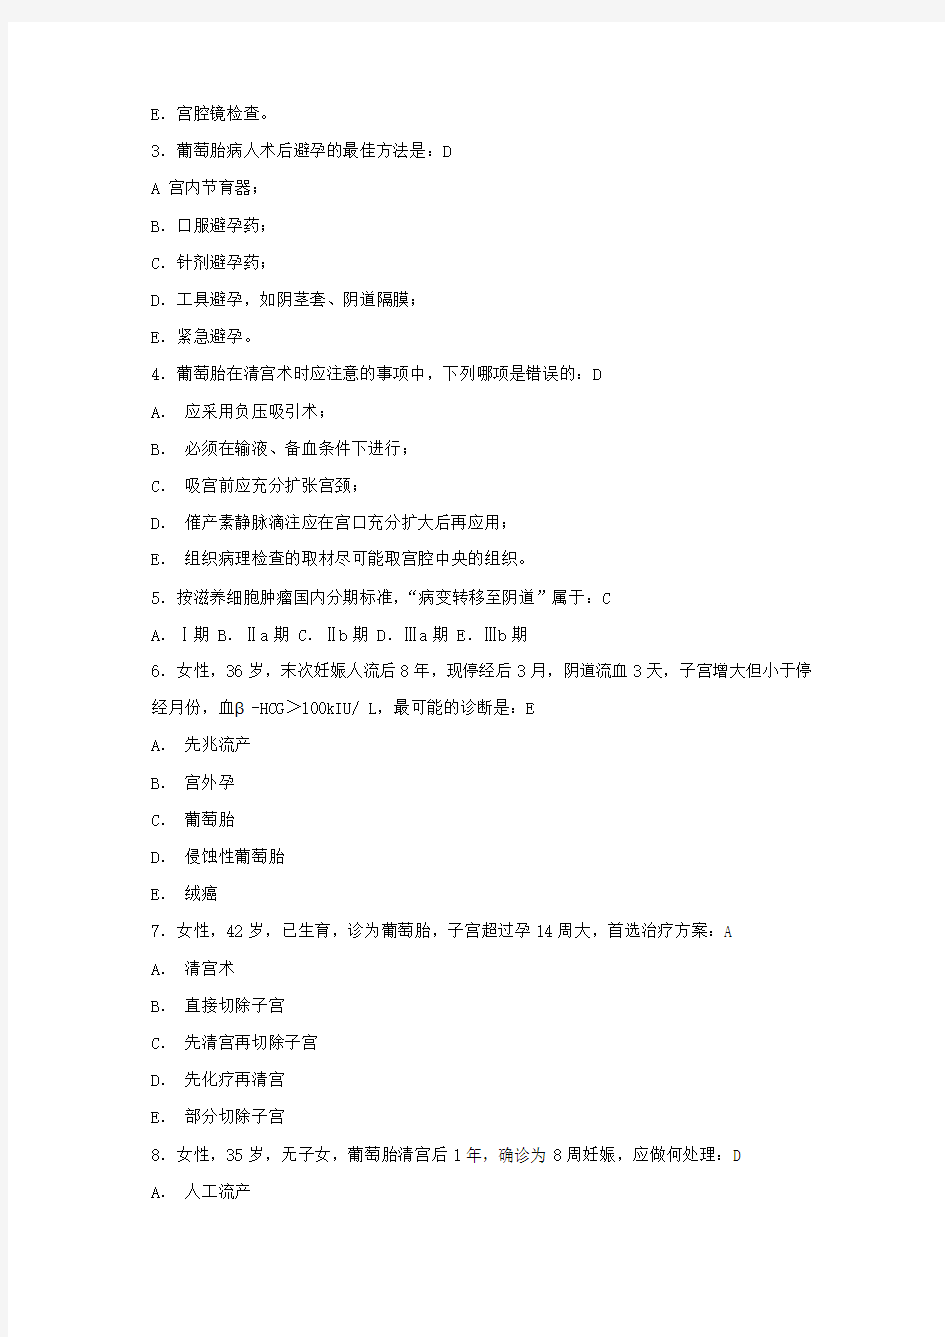 上海交通大学医学院(上海交大)练习题第三十四章 妊娠滋养细胞疾病